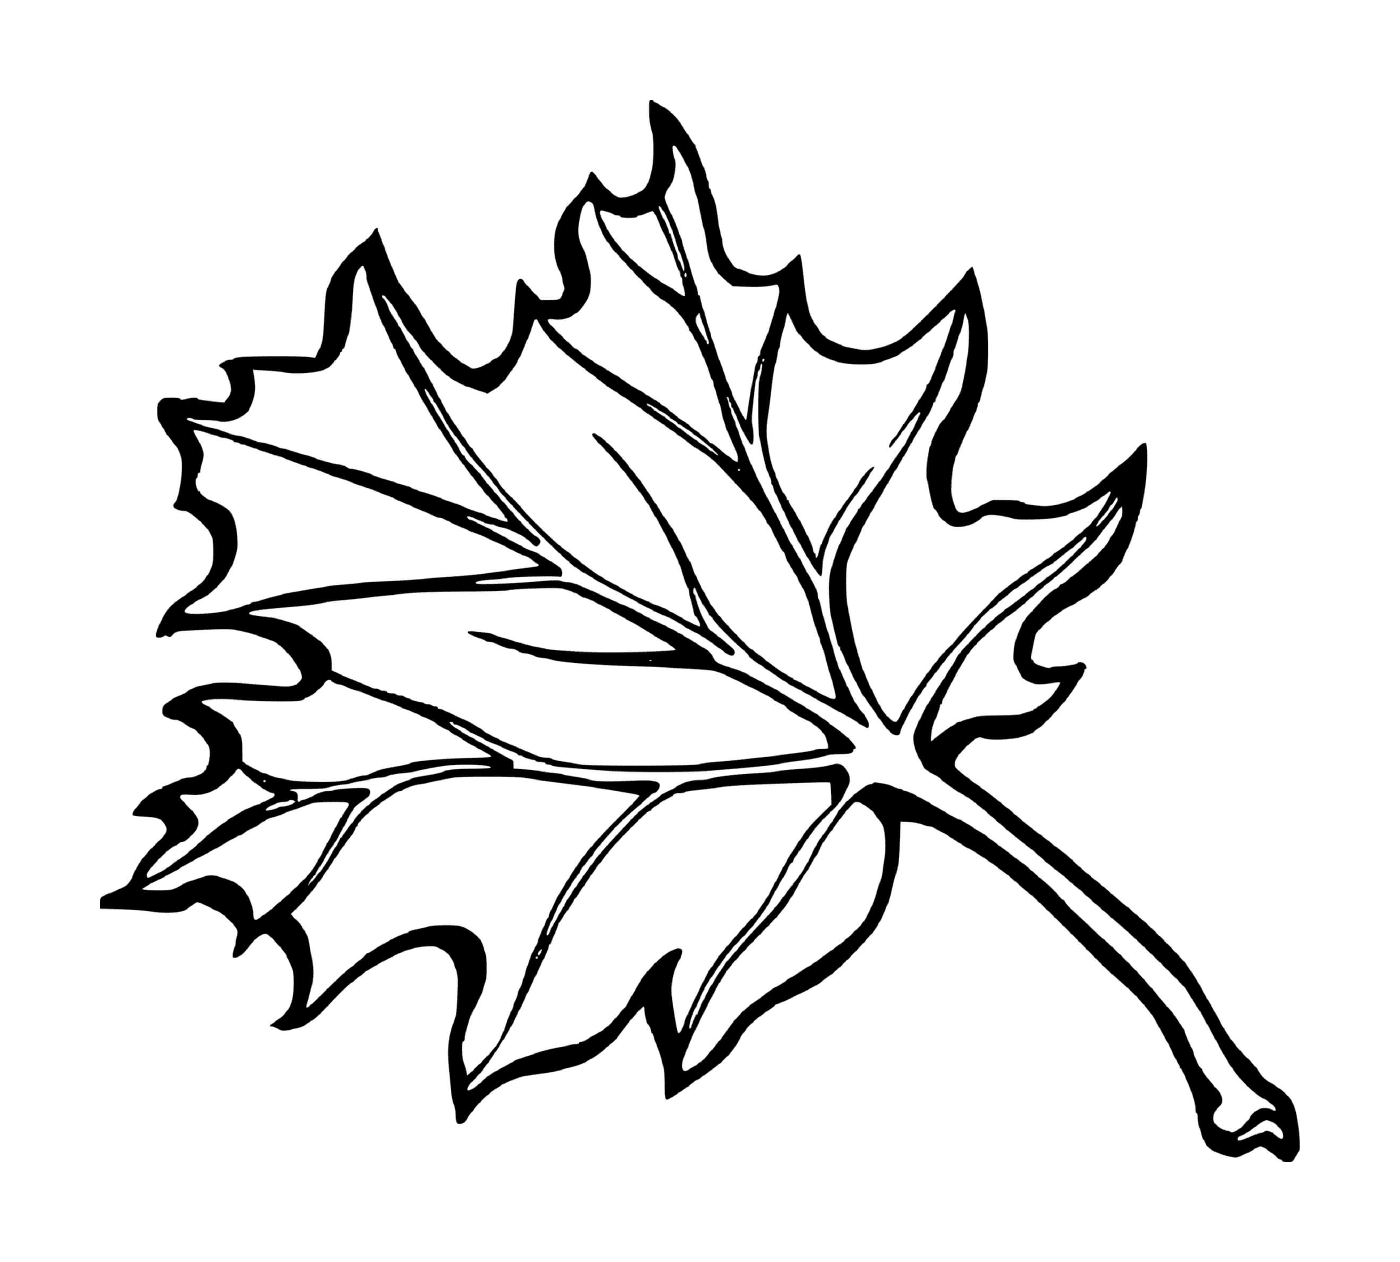  Fall Maple Leaf of Canada 